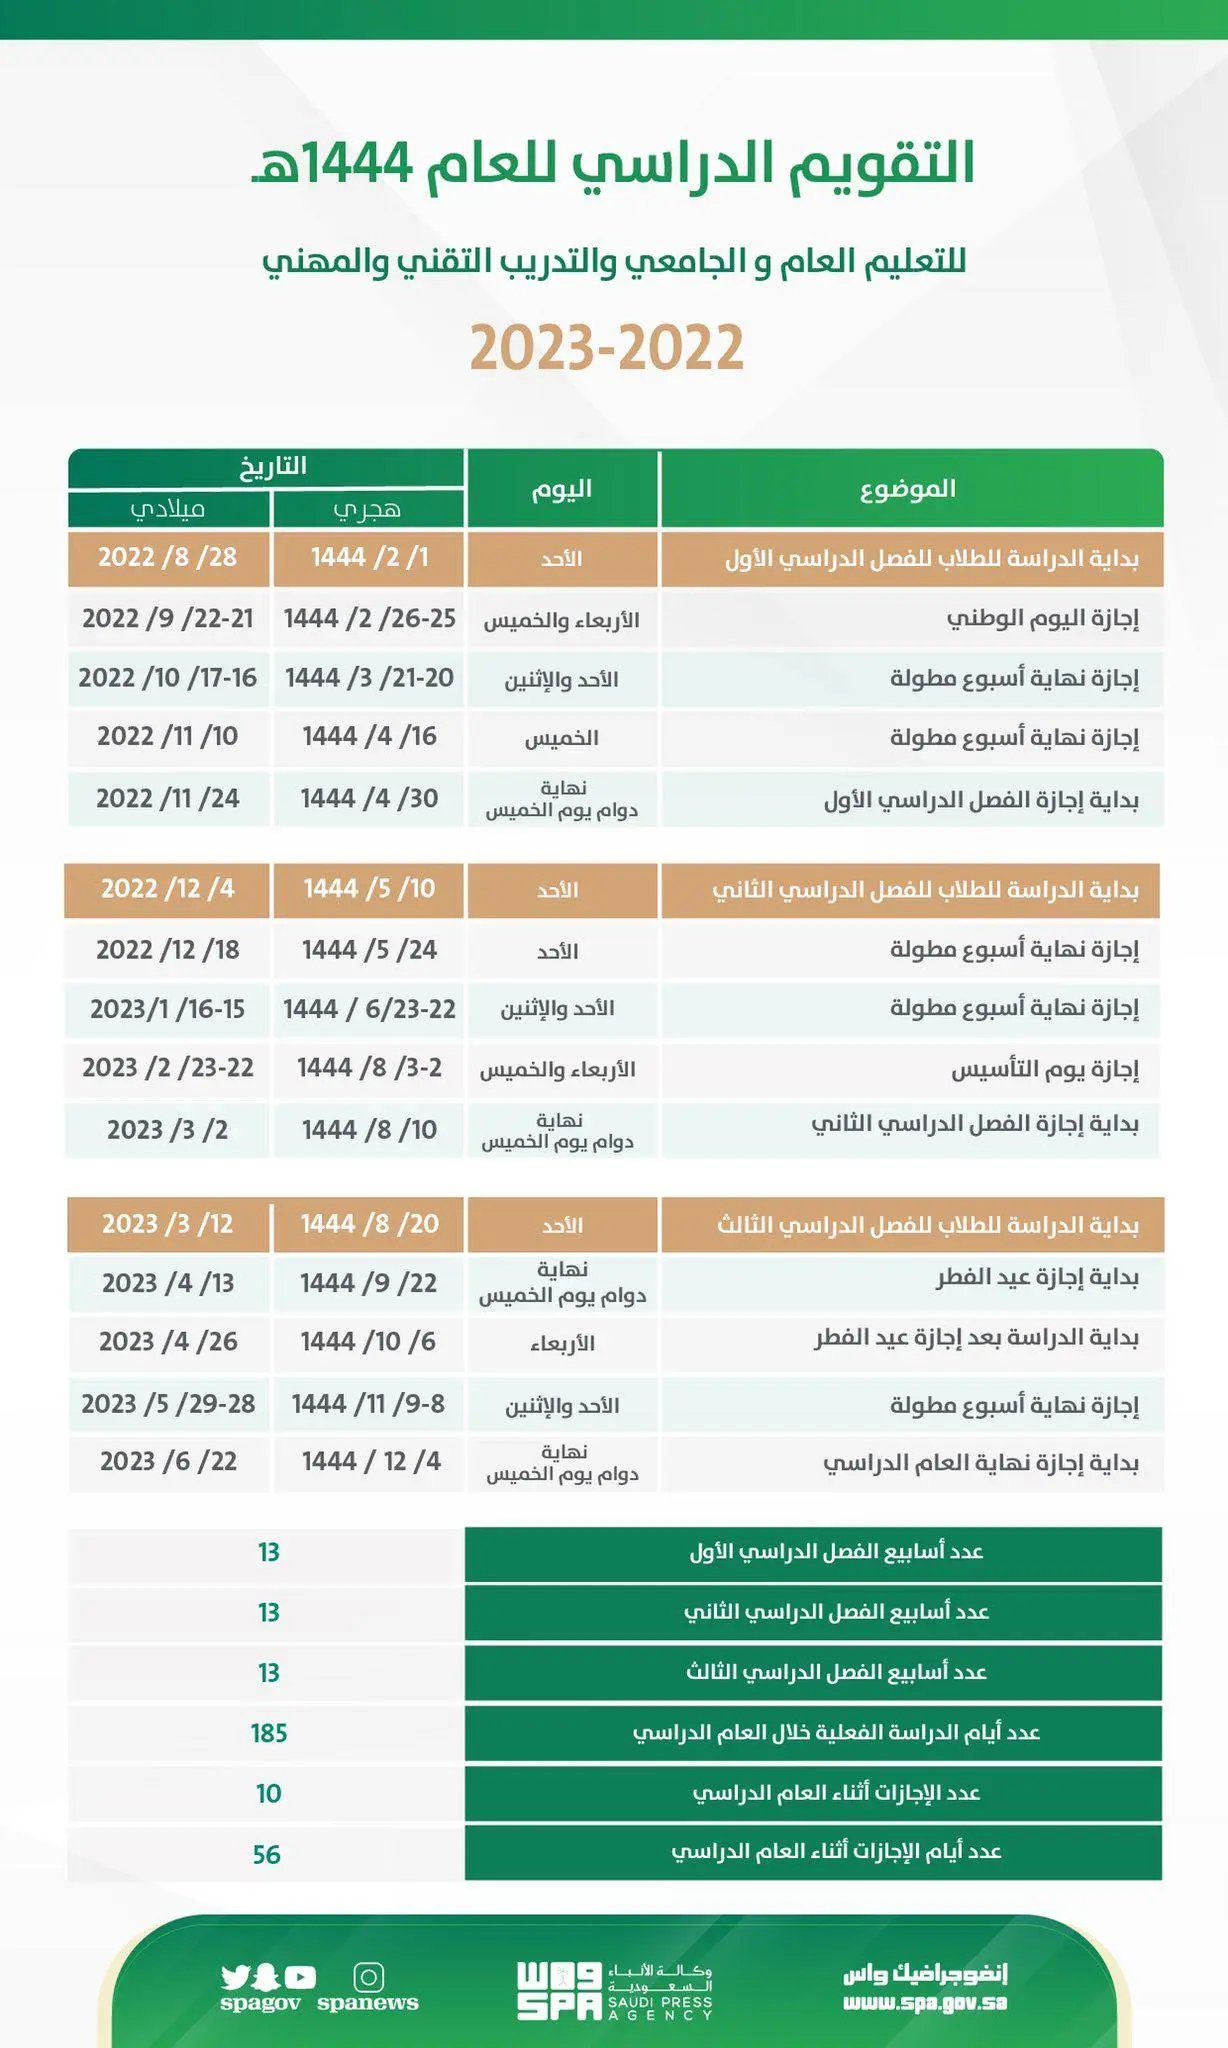 تقويم - التقويم الدراسي في السعودية وموعد اختبارات الفصل الأول تحت التعديل التي ستجرى هذا العام 2022/ 2023 - ثقفني